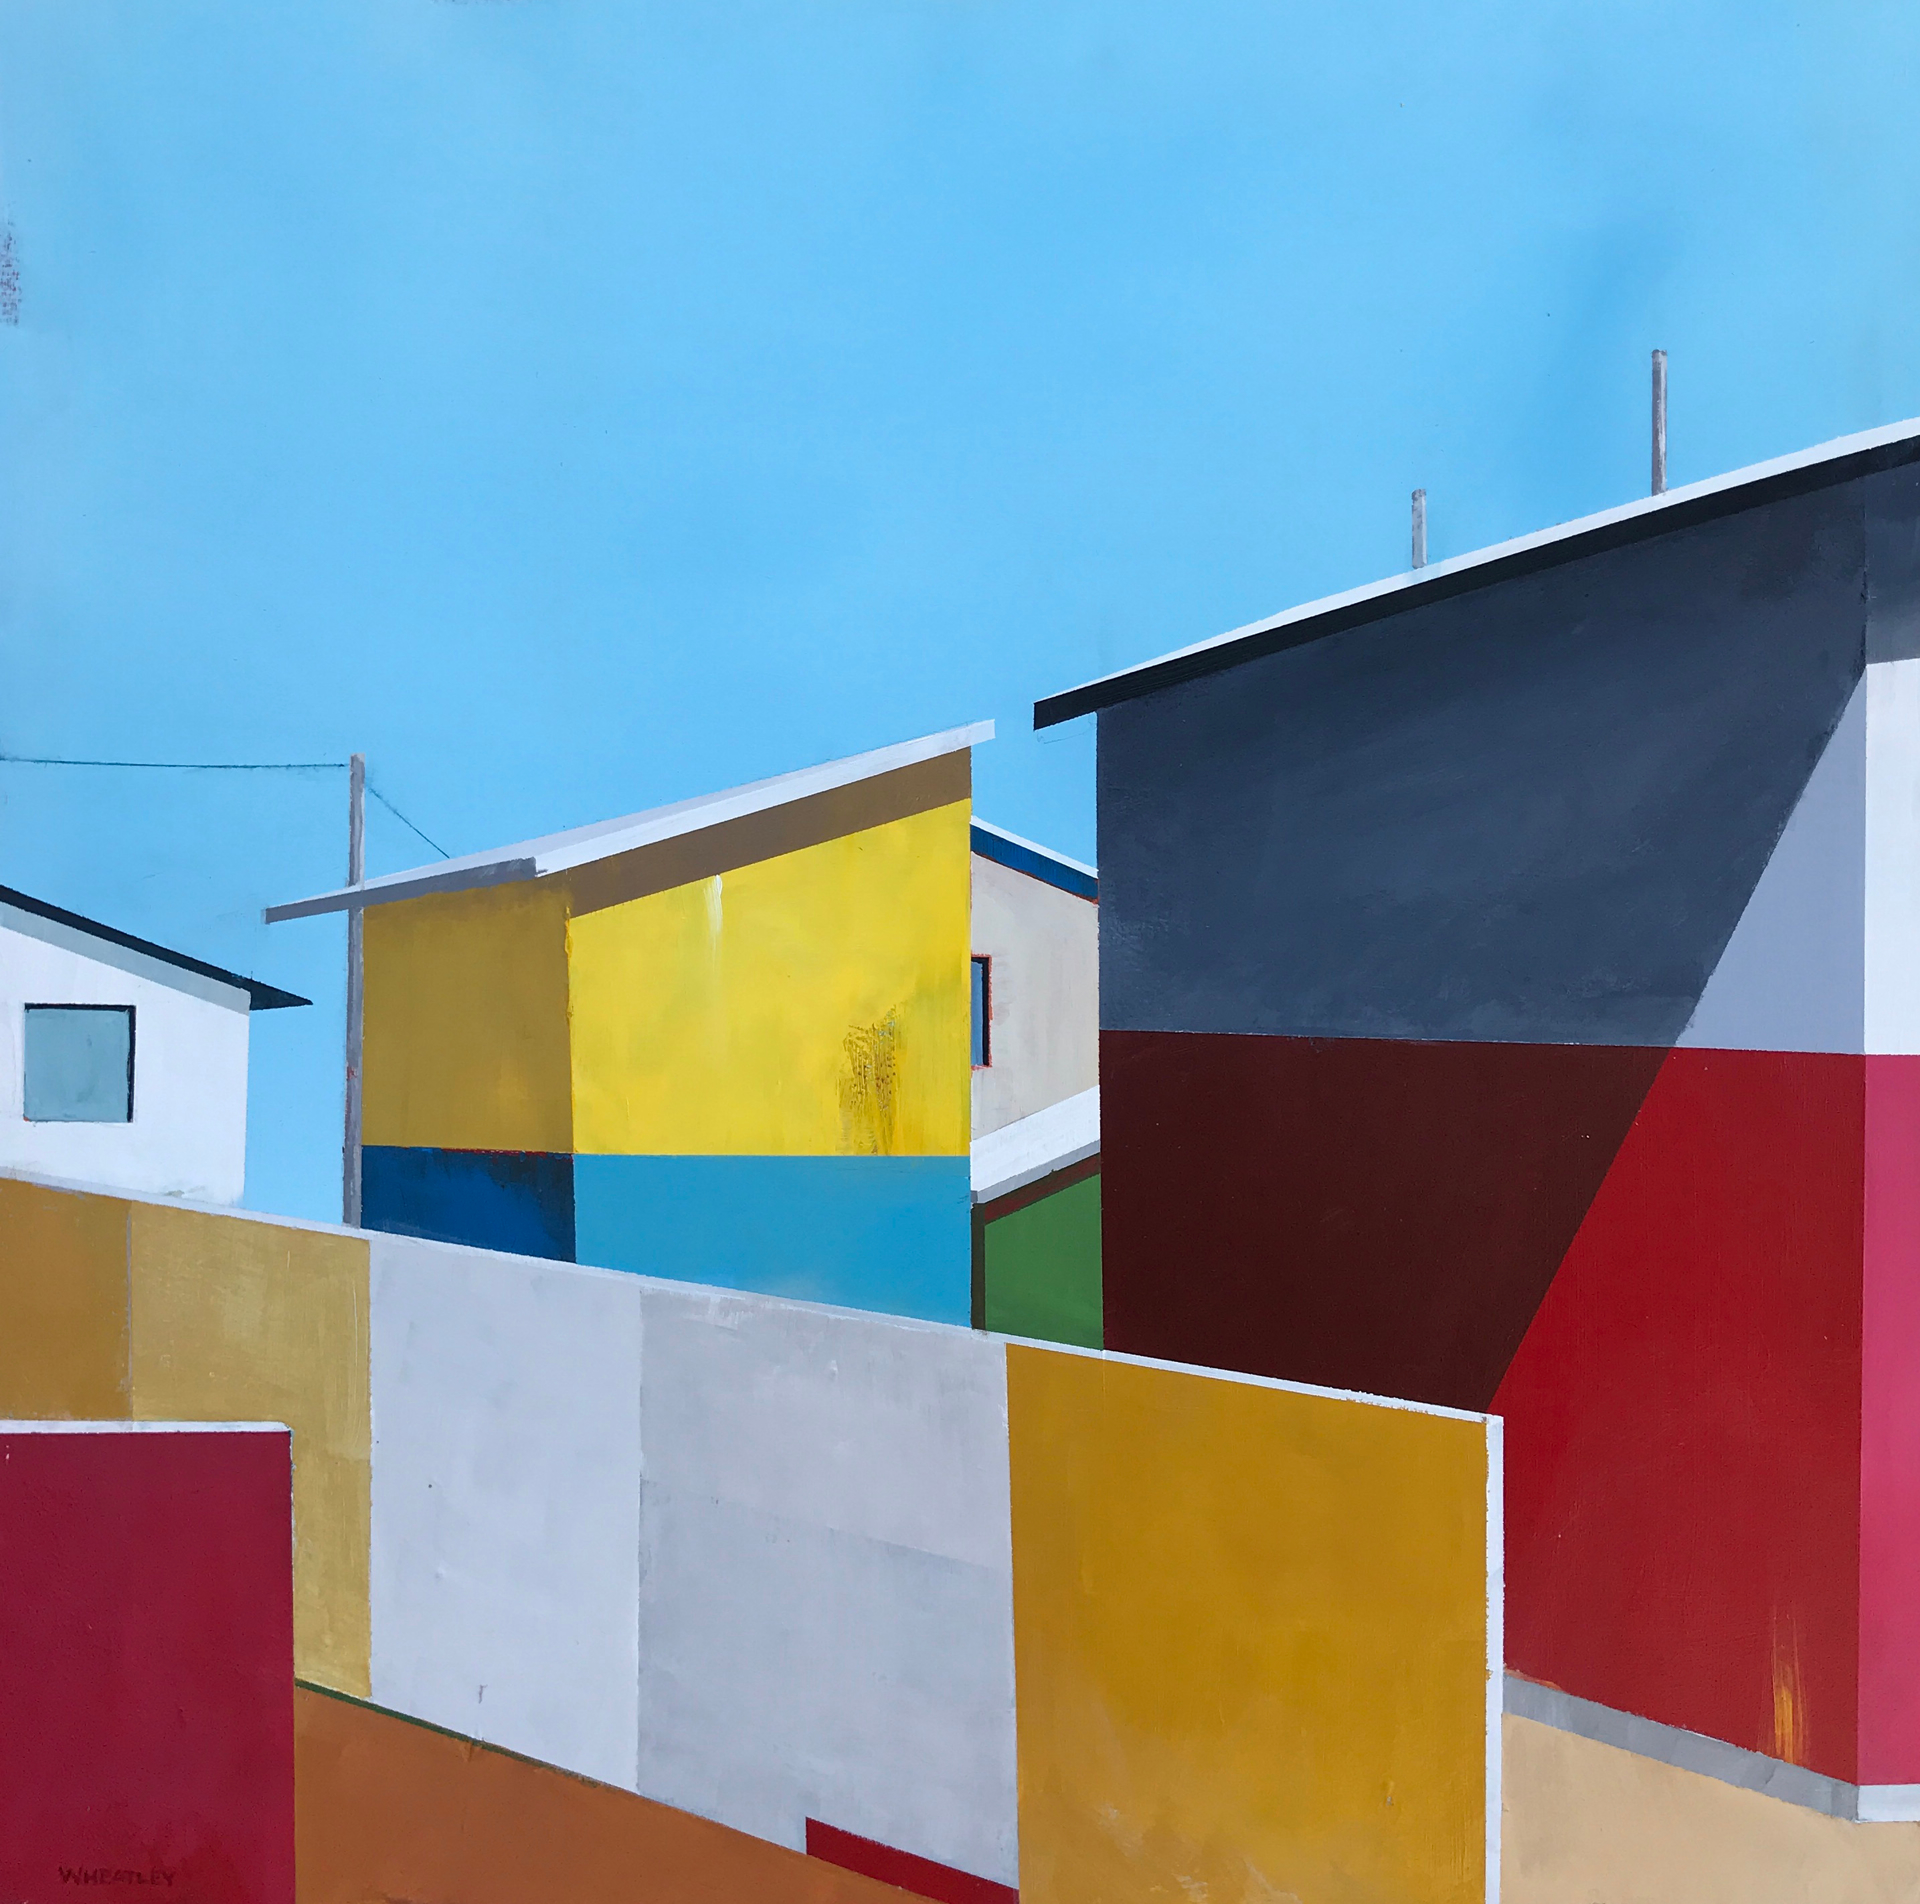 San Fernando by Justin Wheatley